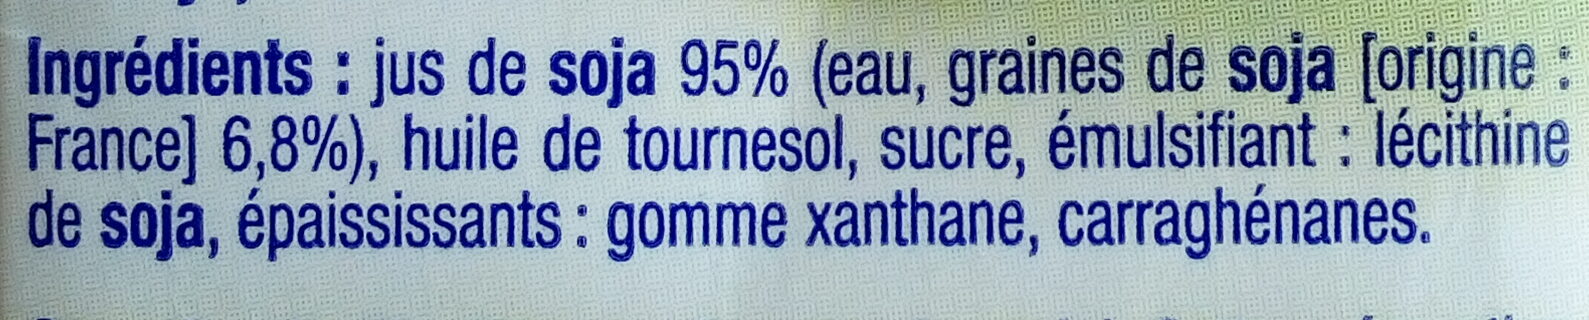 Soja cuisine 5% mg - Ingredients - fr